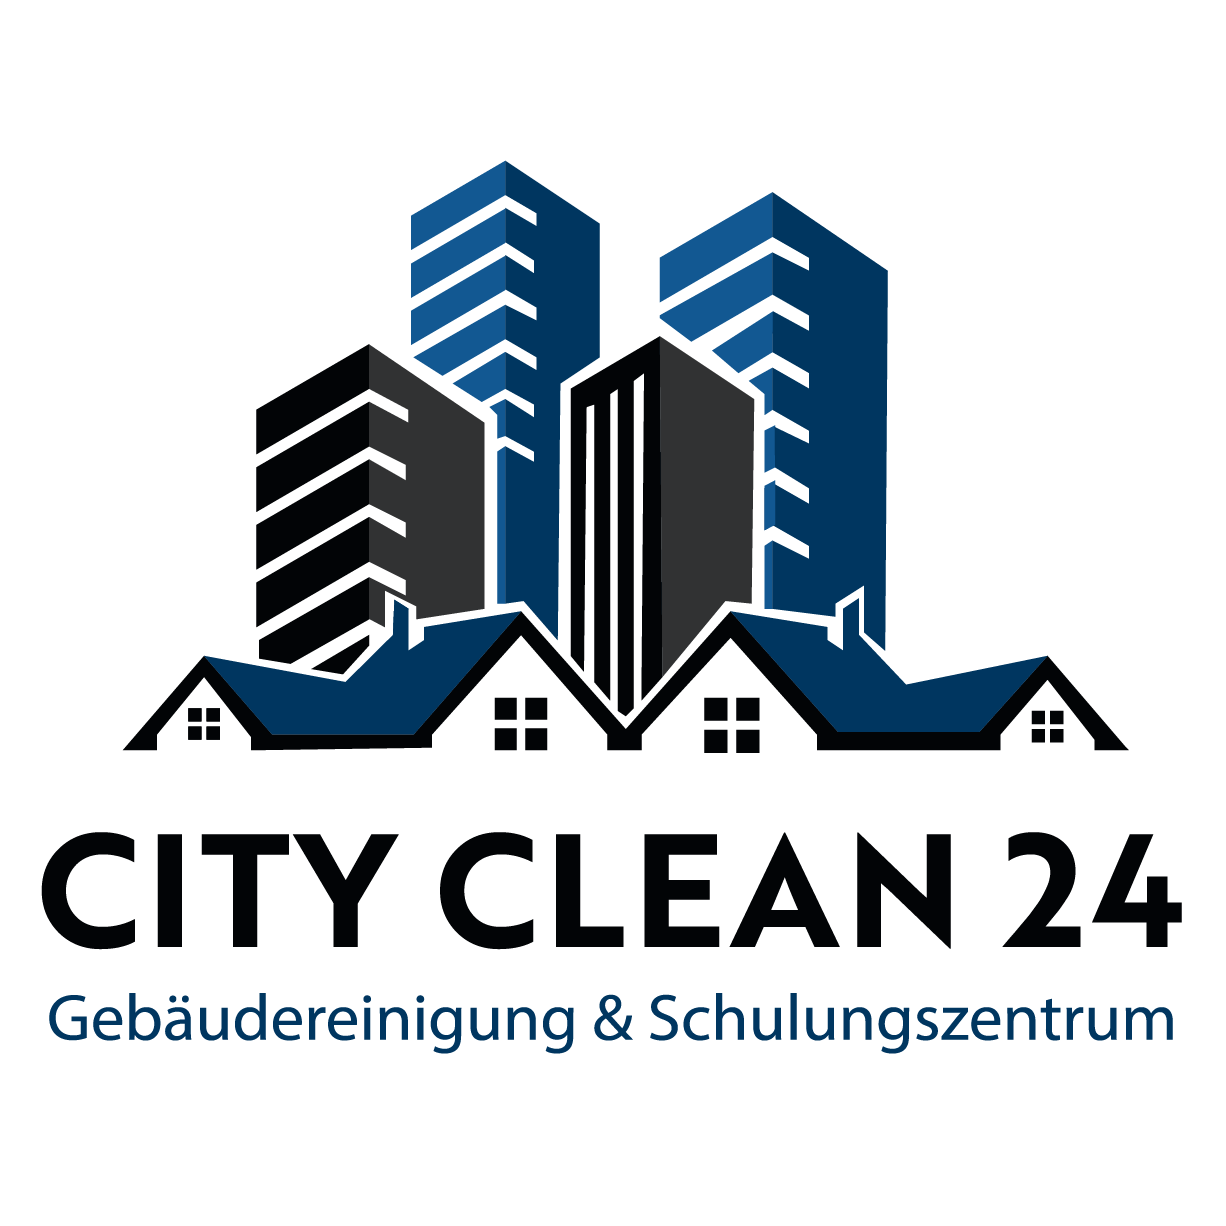 City Clean 24 Gebäuderreinigung & Schulungszentrum | Reinigungsfirma | Fensterreinigung | Büroreinigung